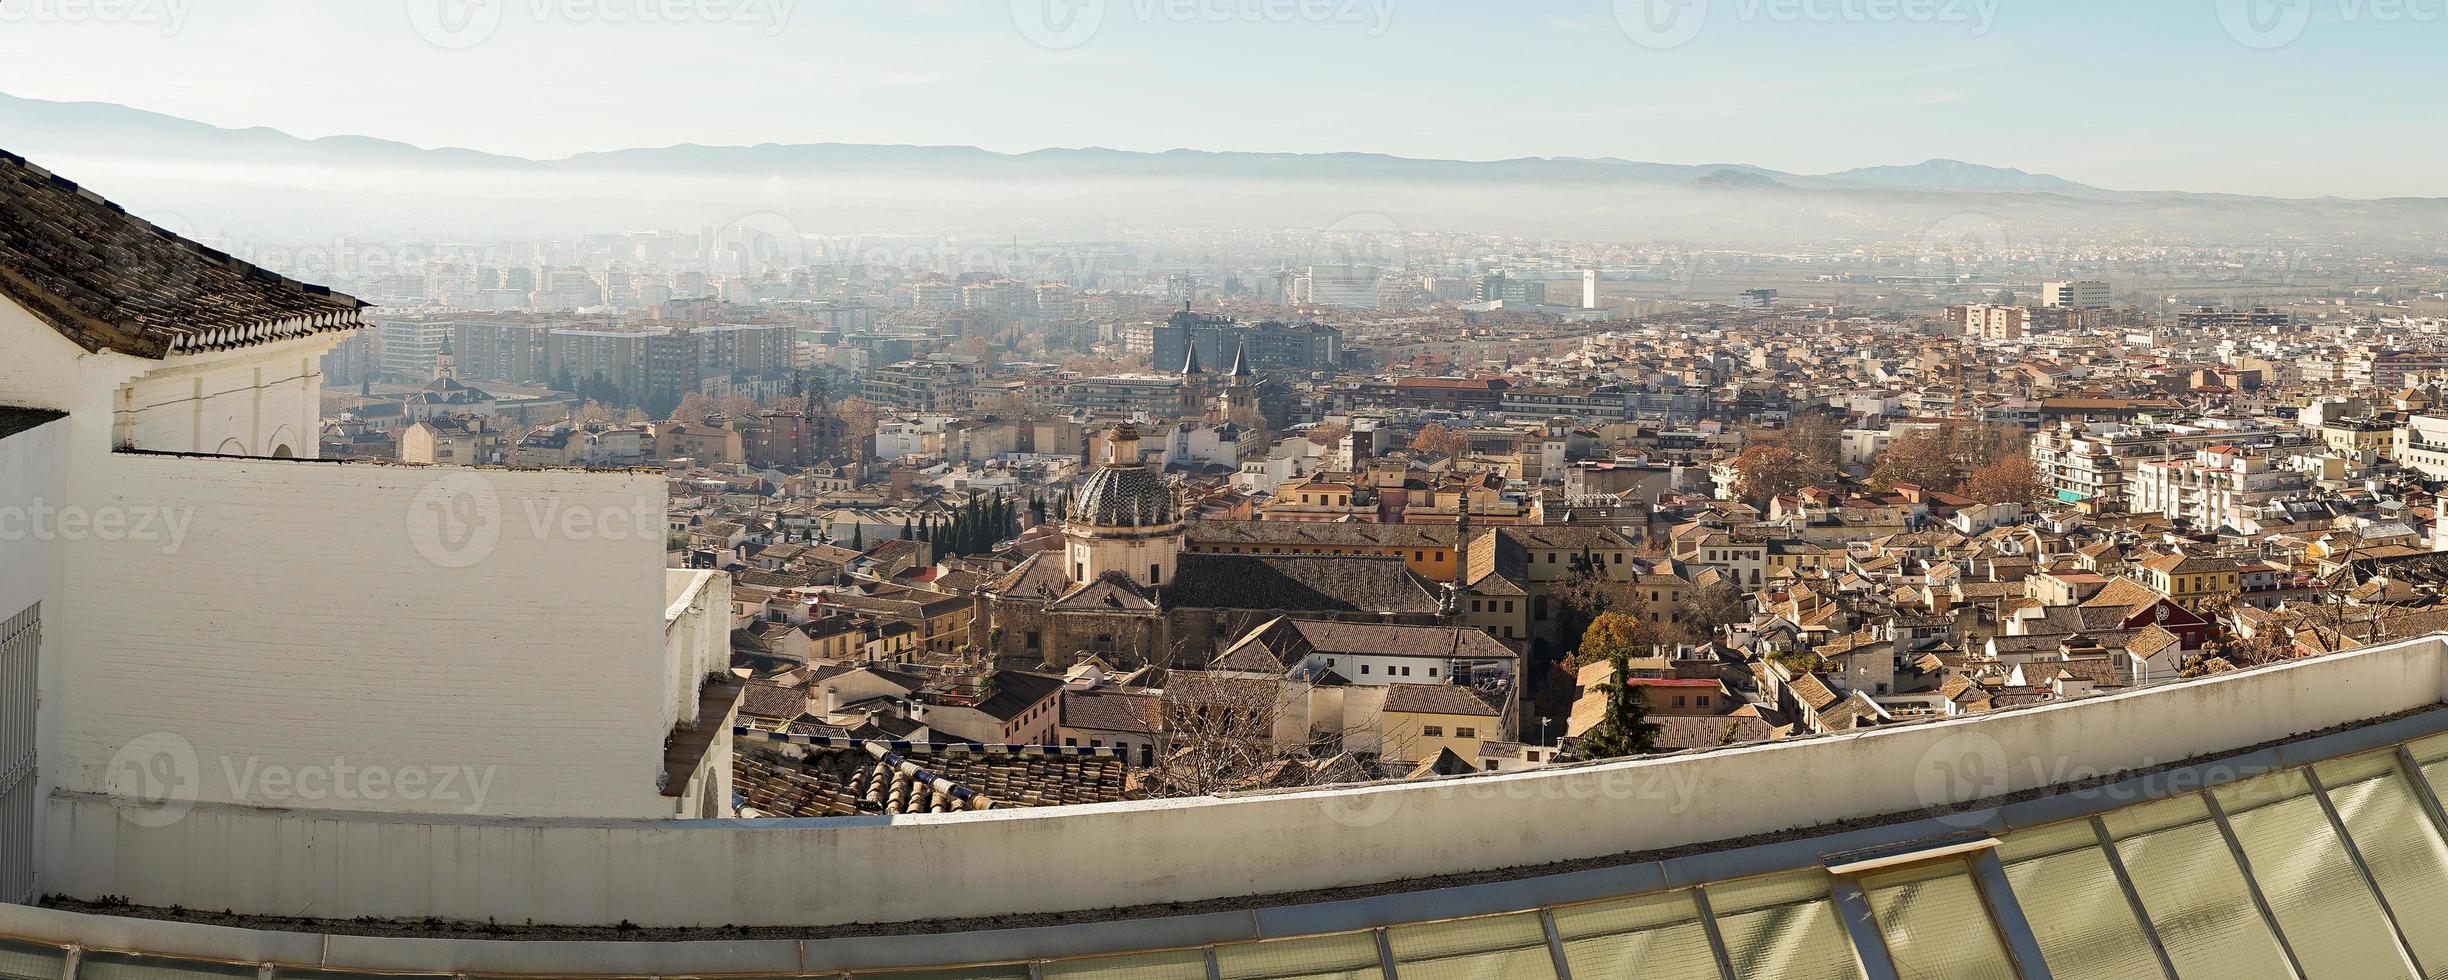 panoramisch uitzicht over de stad granada foto